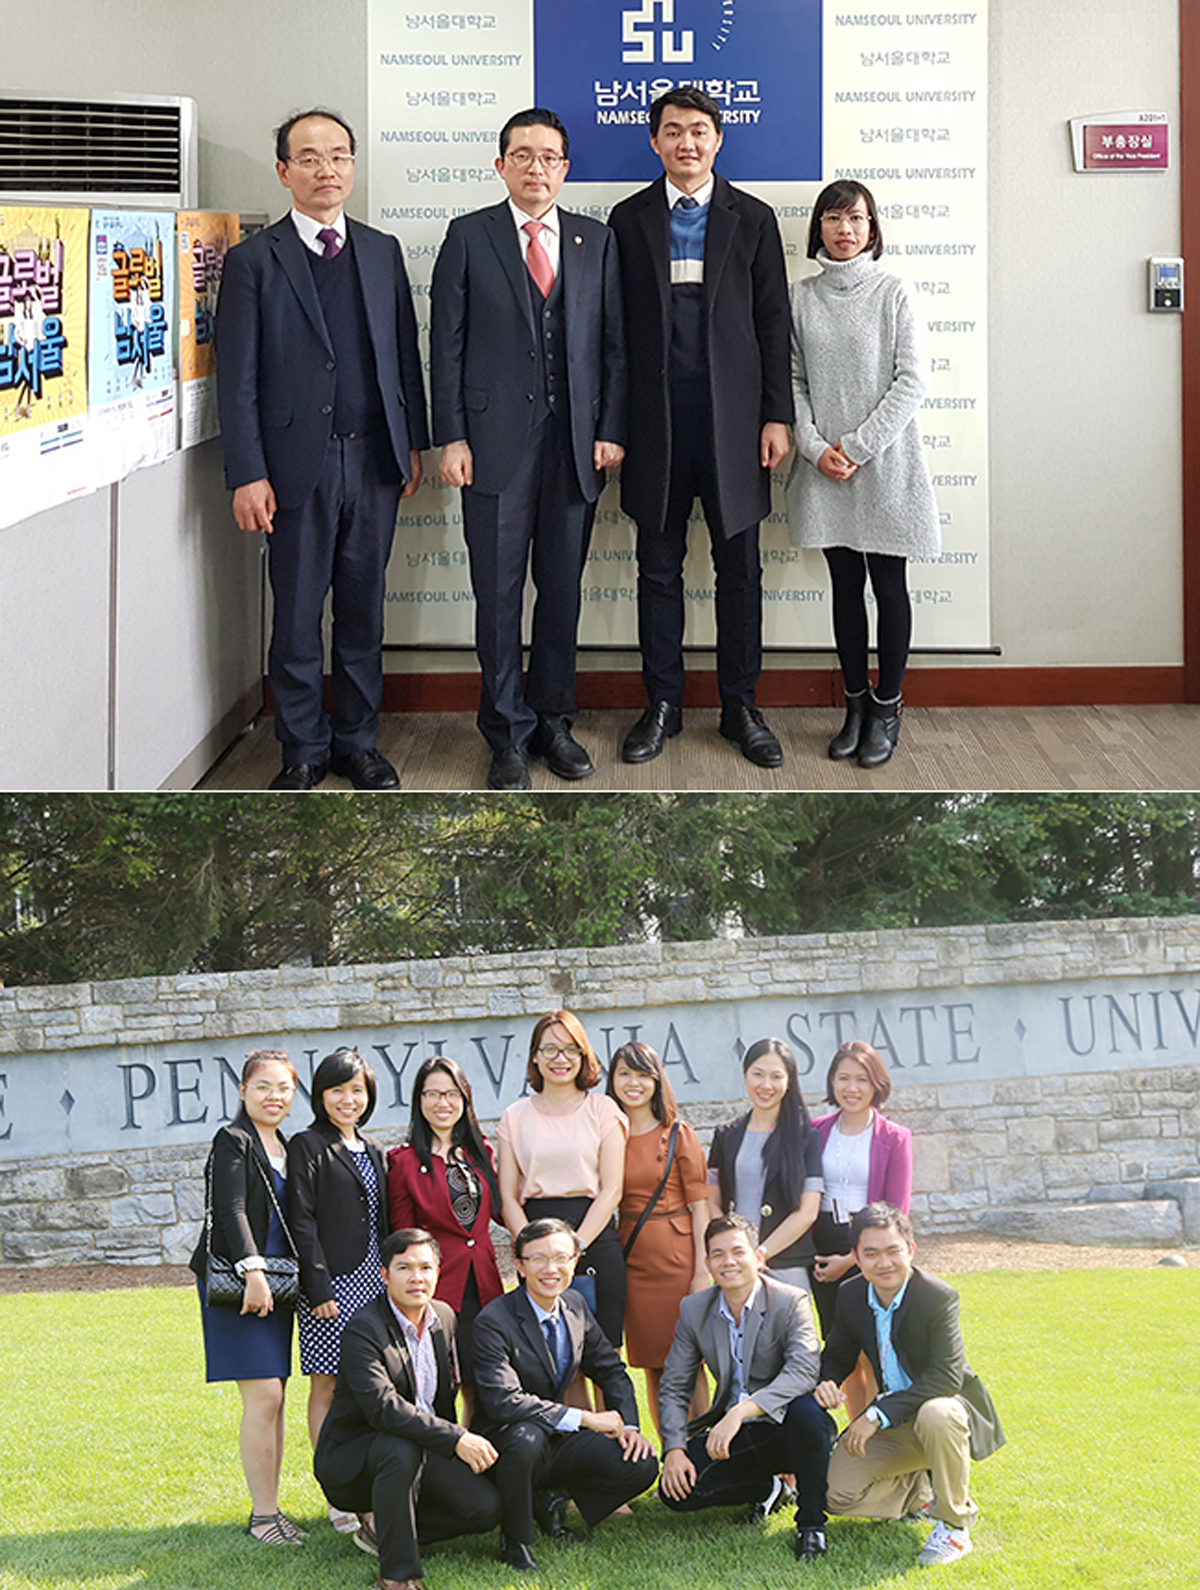 Cán bộ, giảng viên ngành Du lịch sang tham quan, tập huấn chuyên môn tại ĐH Nam Seoul, Hàn Quốc (ảnh trên) và tại ĐH Bang Pennsylvania